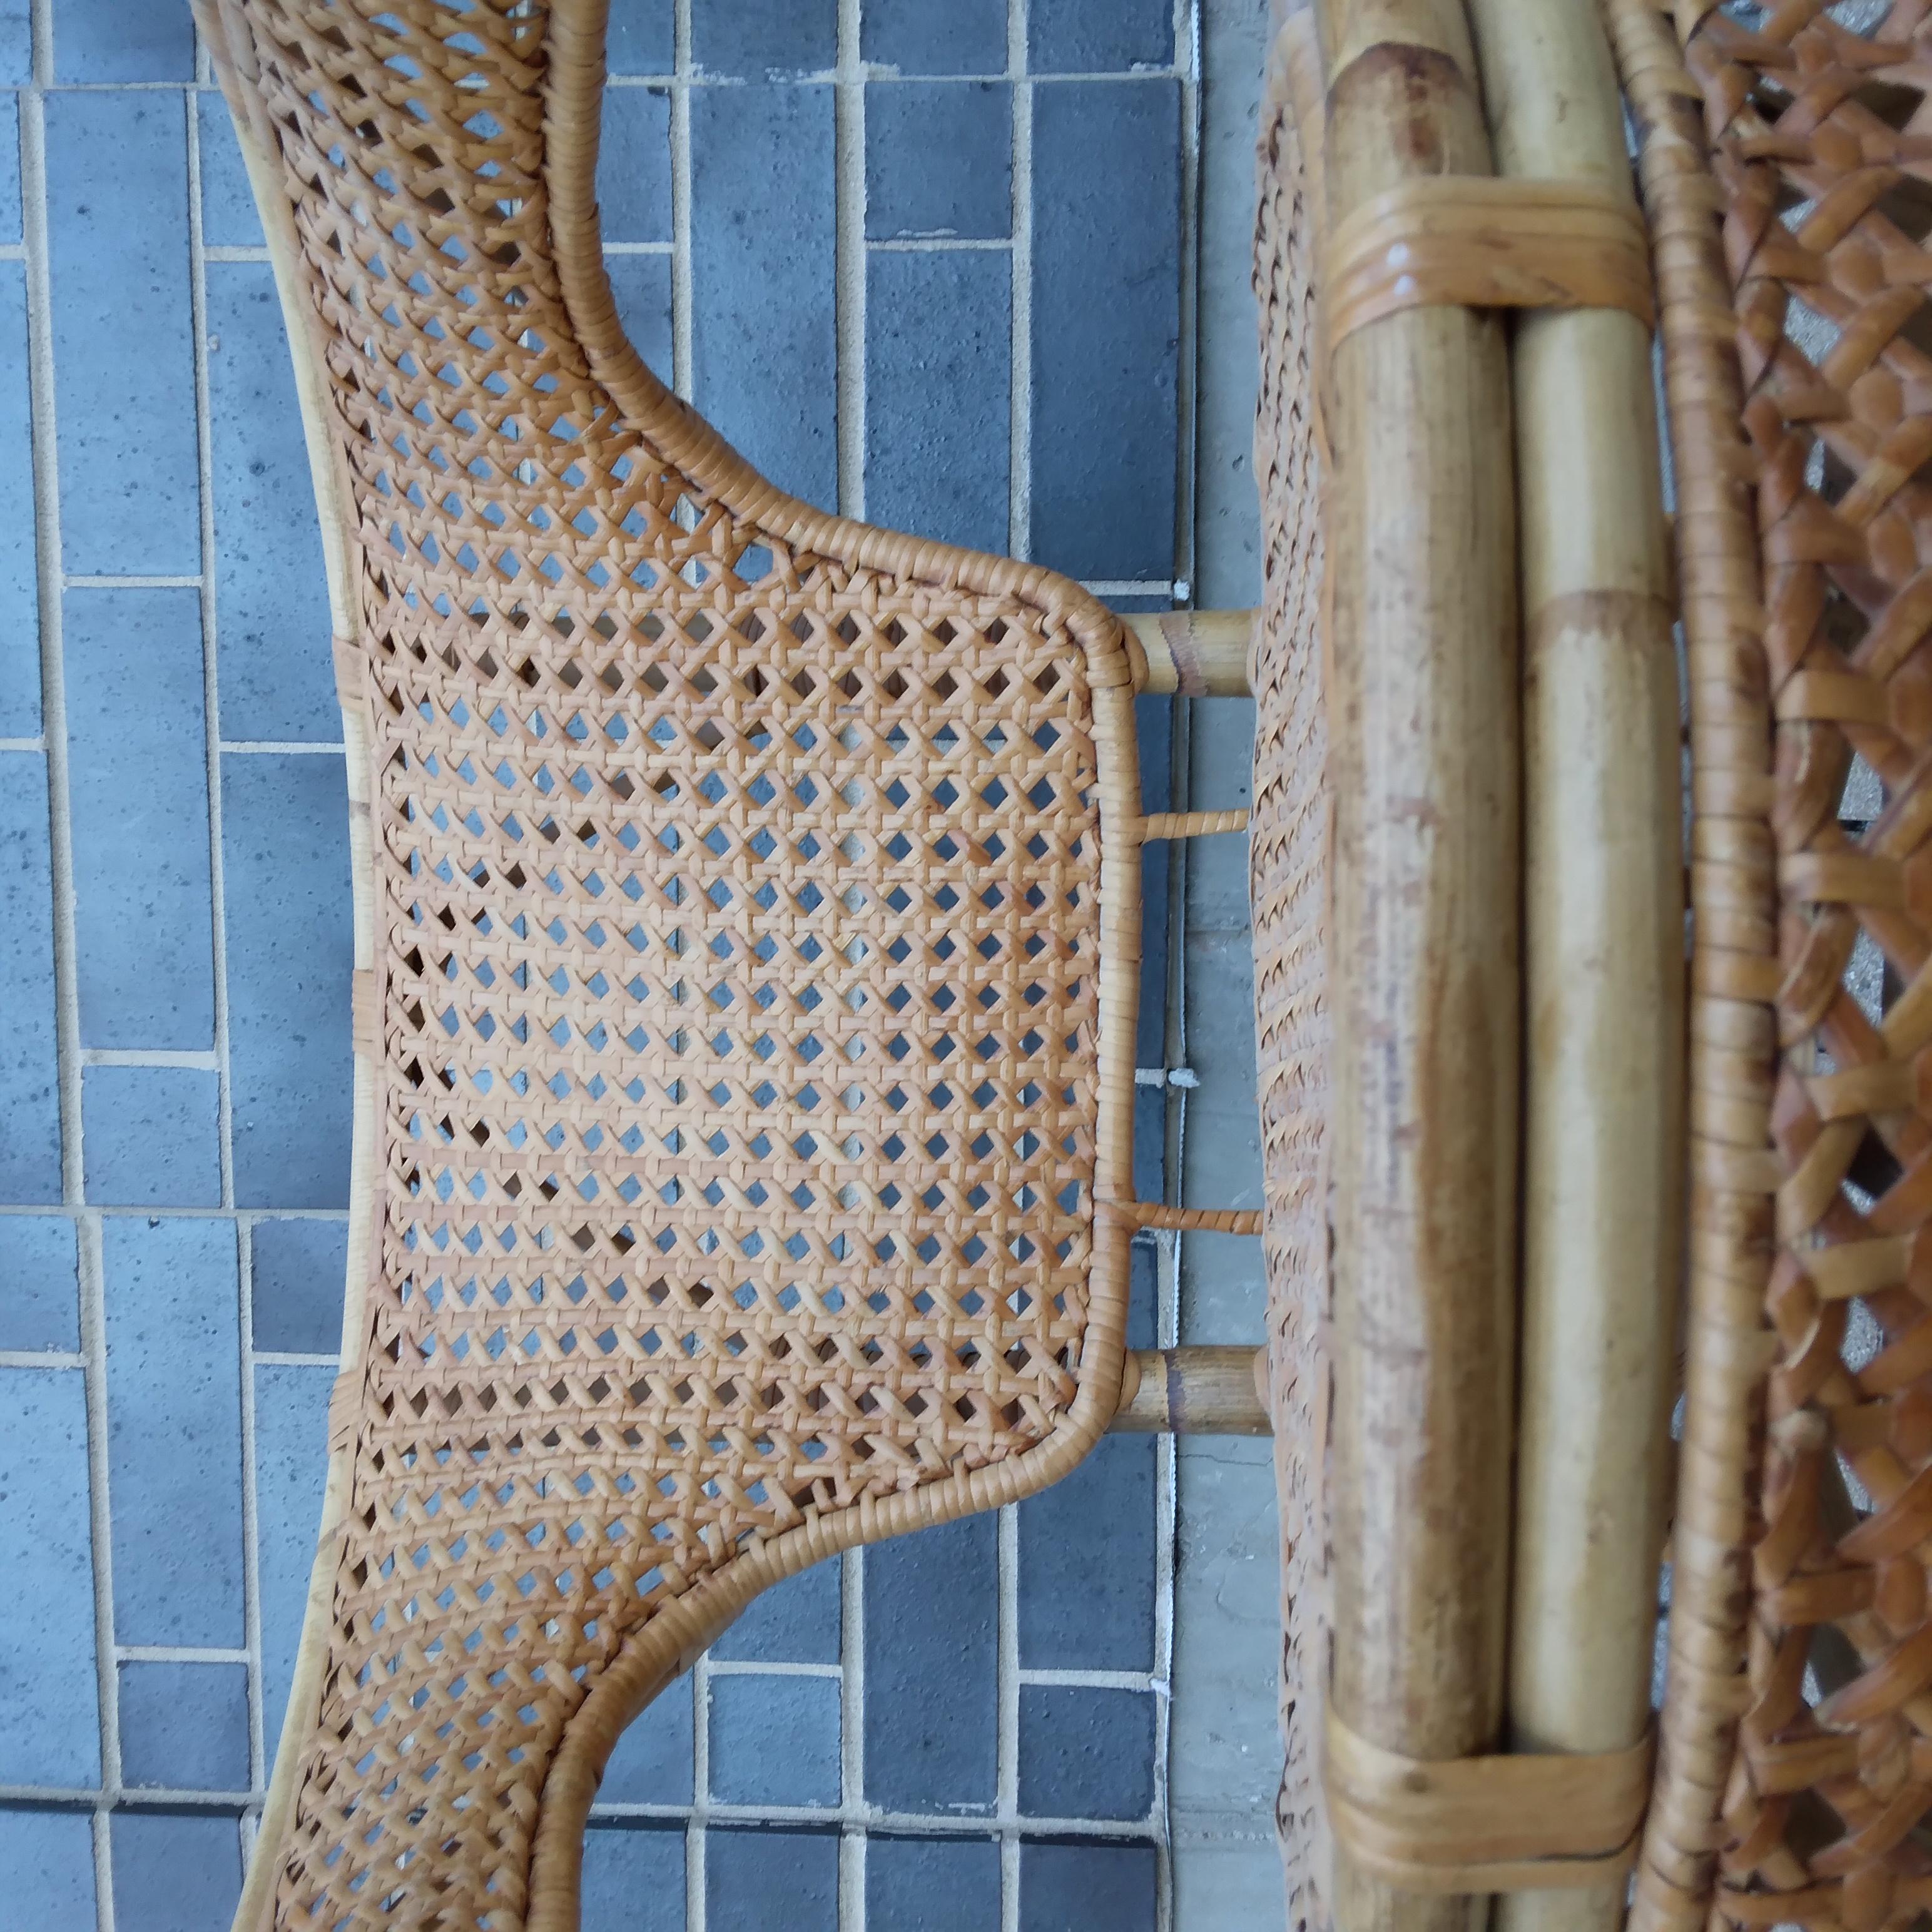 Geflochtene Muster aus sonnenverbranntem Sand schlängeln sich über diesen Sessel aus Vintage-Geflecht. Wir lieben ihre zierlichen Kurven und ihr engmaschiges, rautenförmiges Geflecht. Lassen Sie uns wissen, ob Sie diese Boho-Schönheit für sich